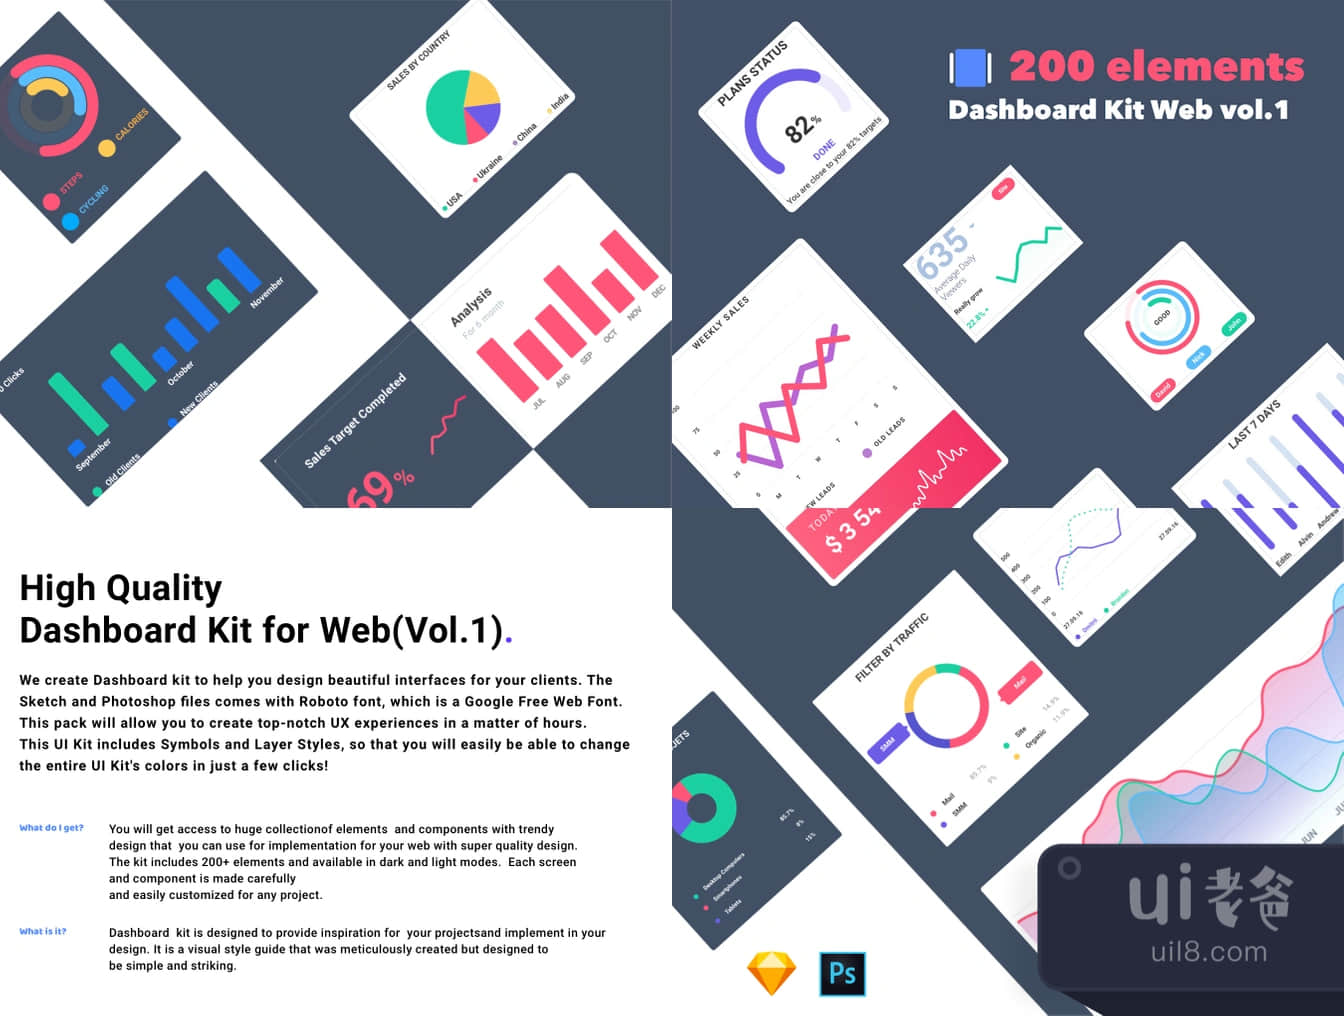 仪表板套件Web Vol.1 (Dashboard Kit Web Vol.1)插图